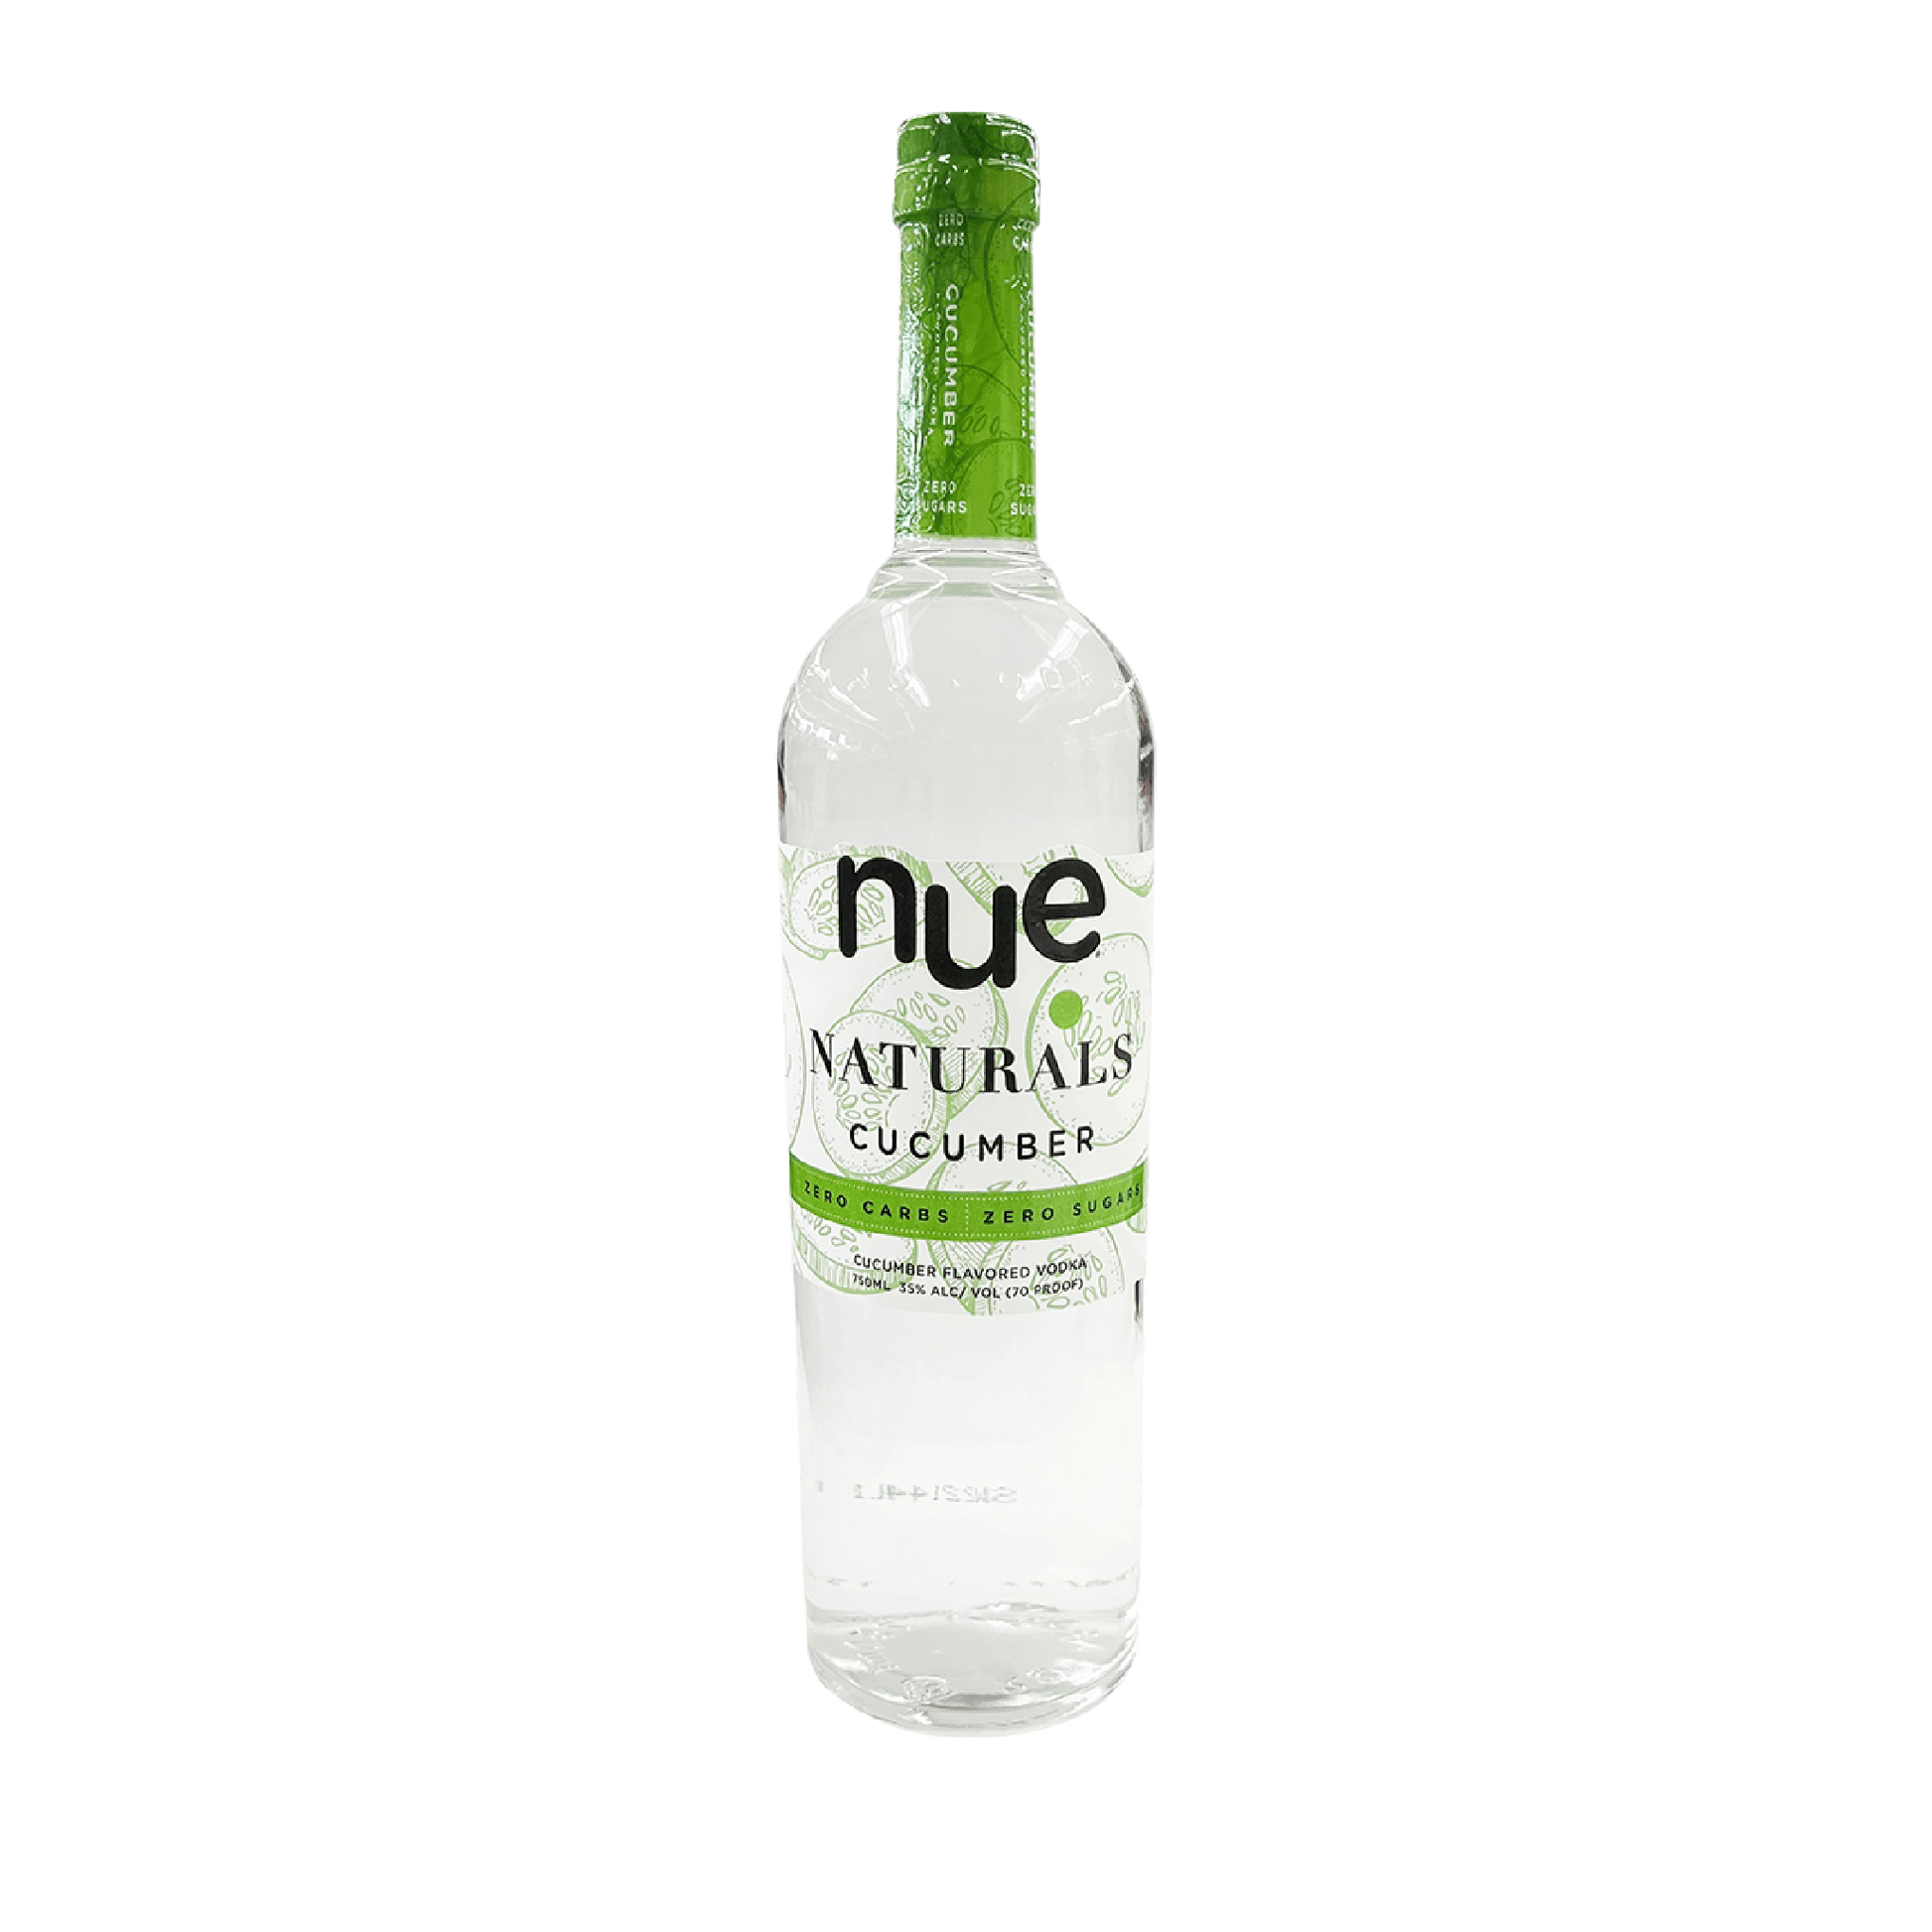 Nue Naturals Cucumber Vodka - Liquor Geeks